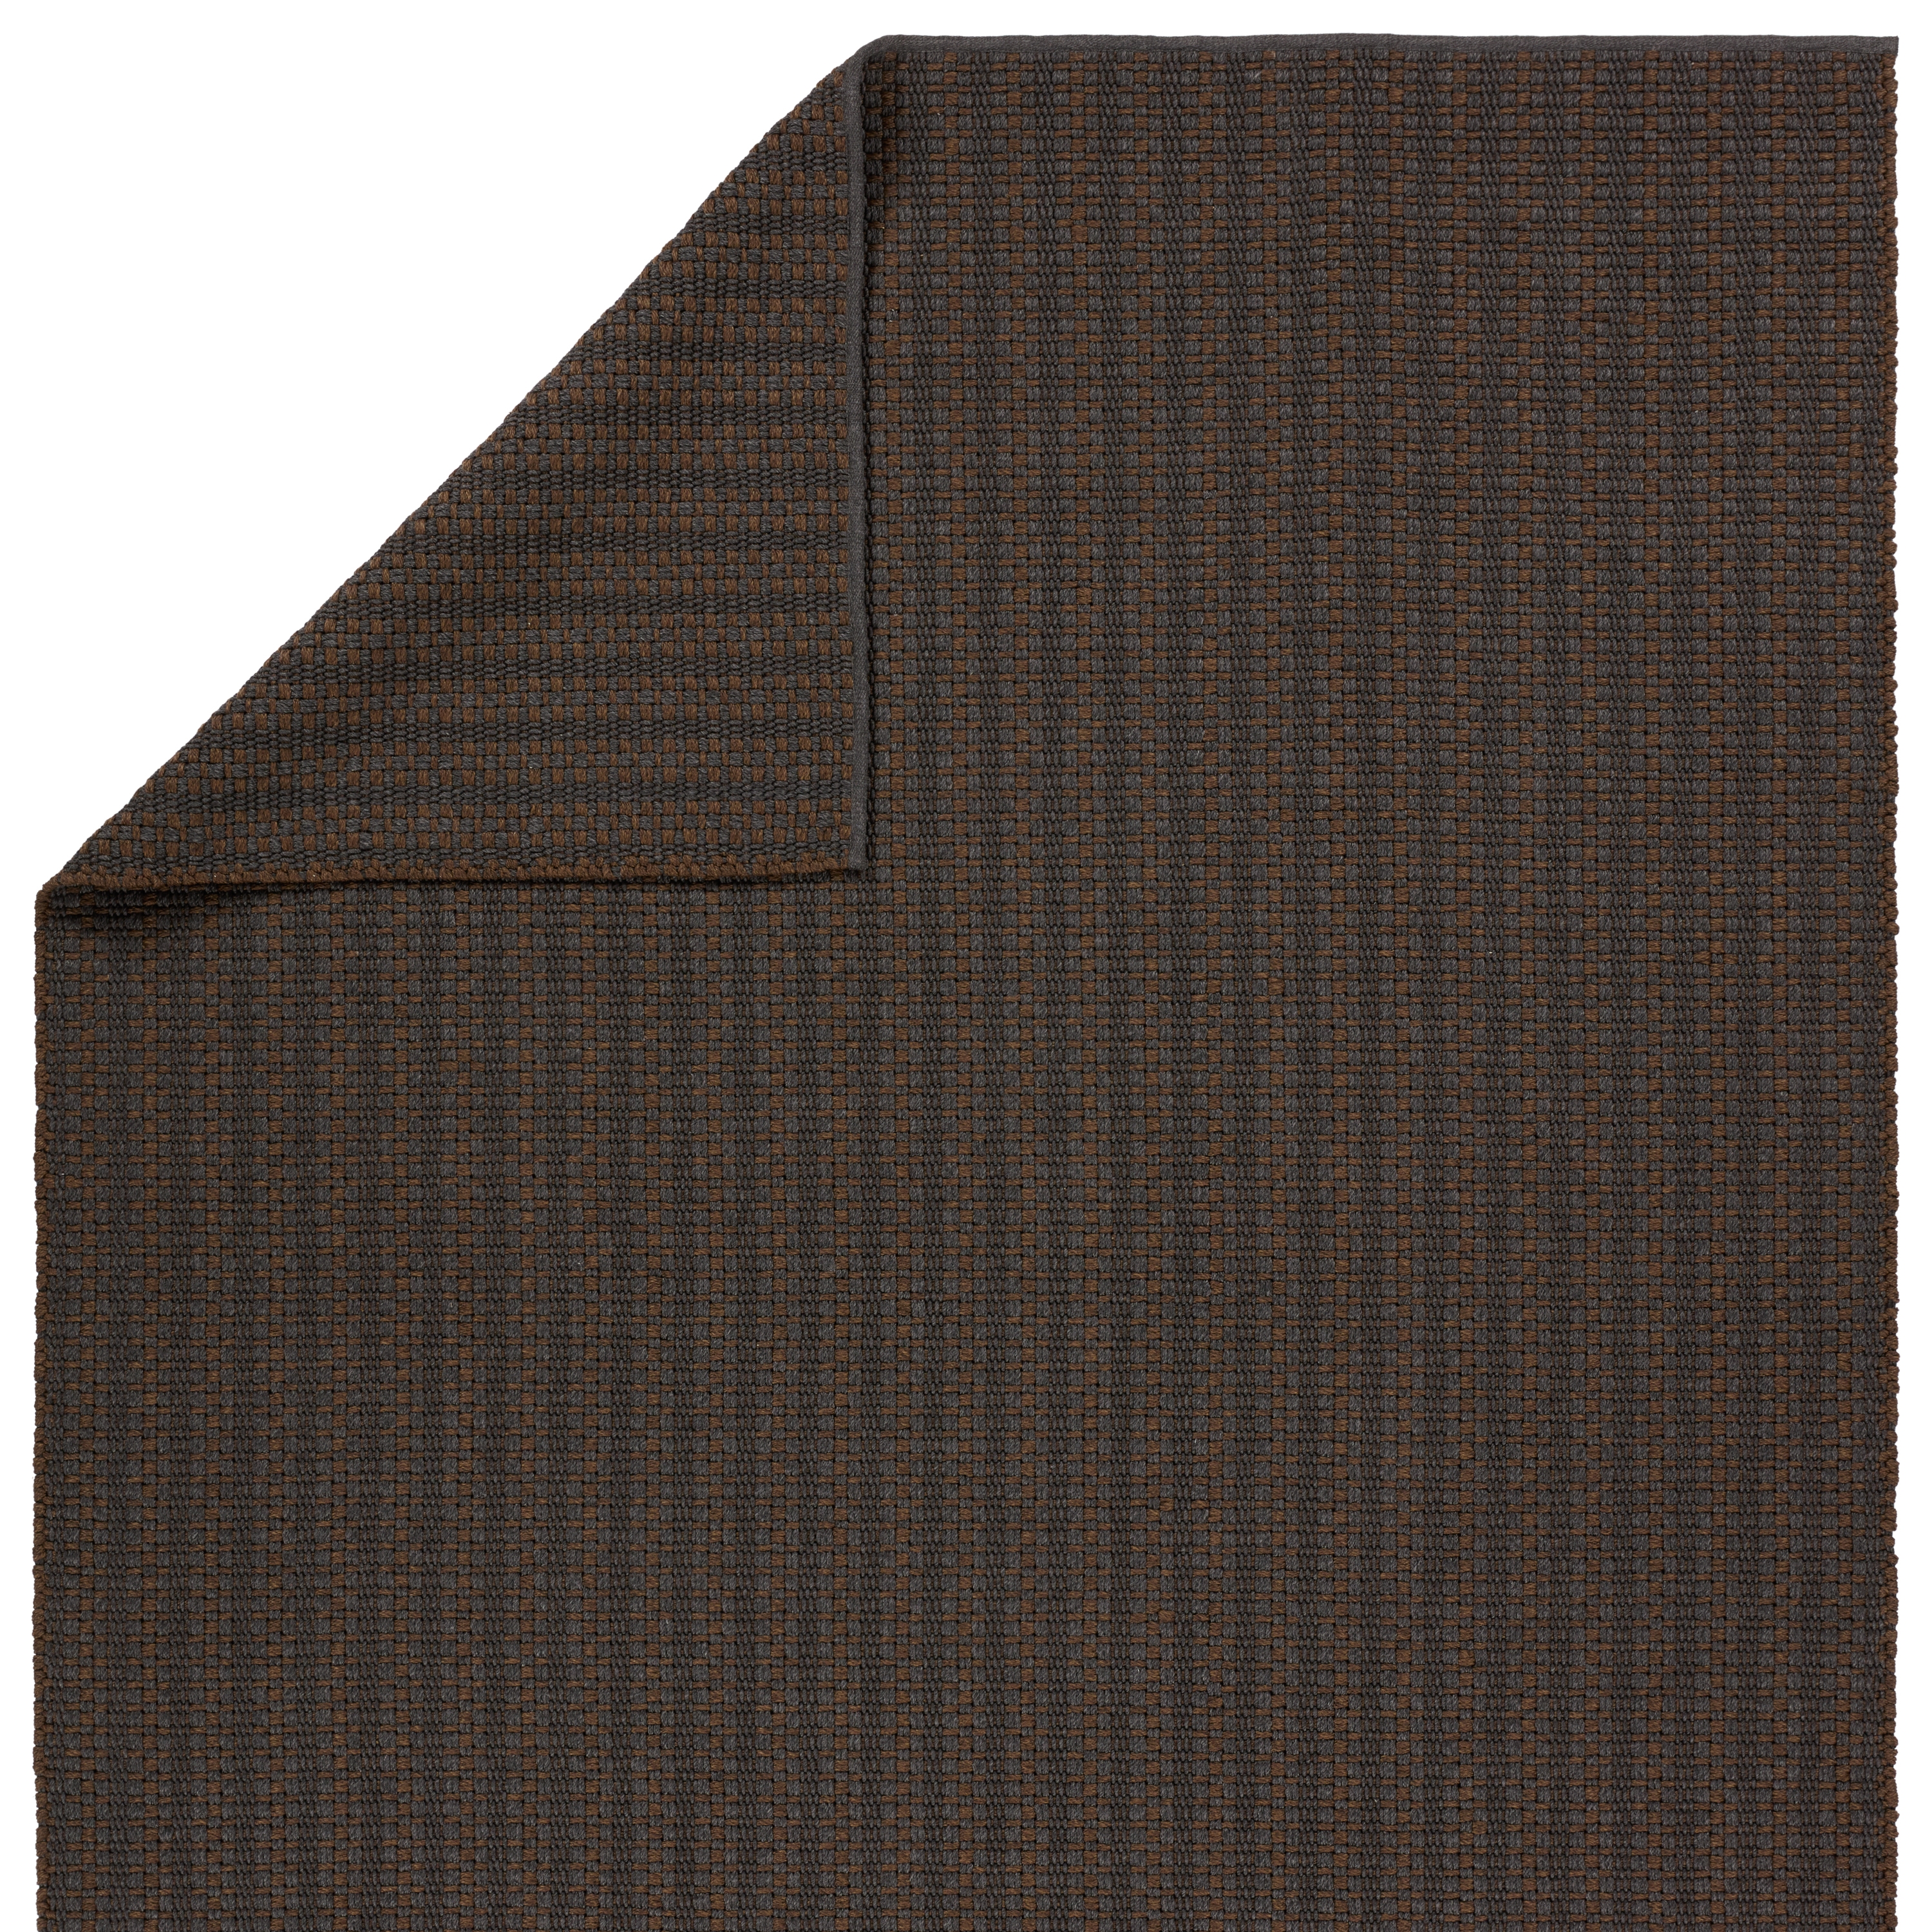 Elmas Handmade Indoor/Outdoor Striped Gray/Brown Area Rug (8'X10') - Image 2